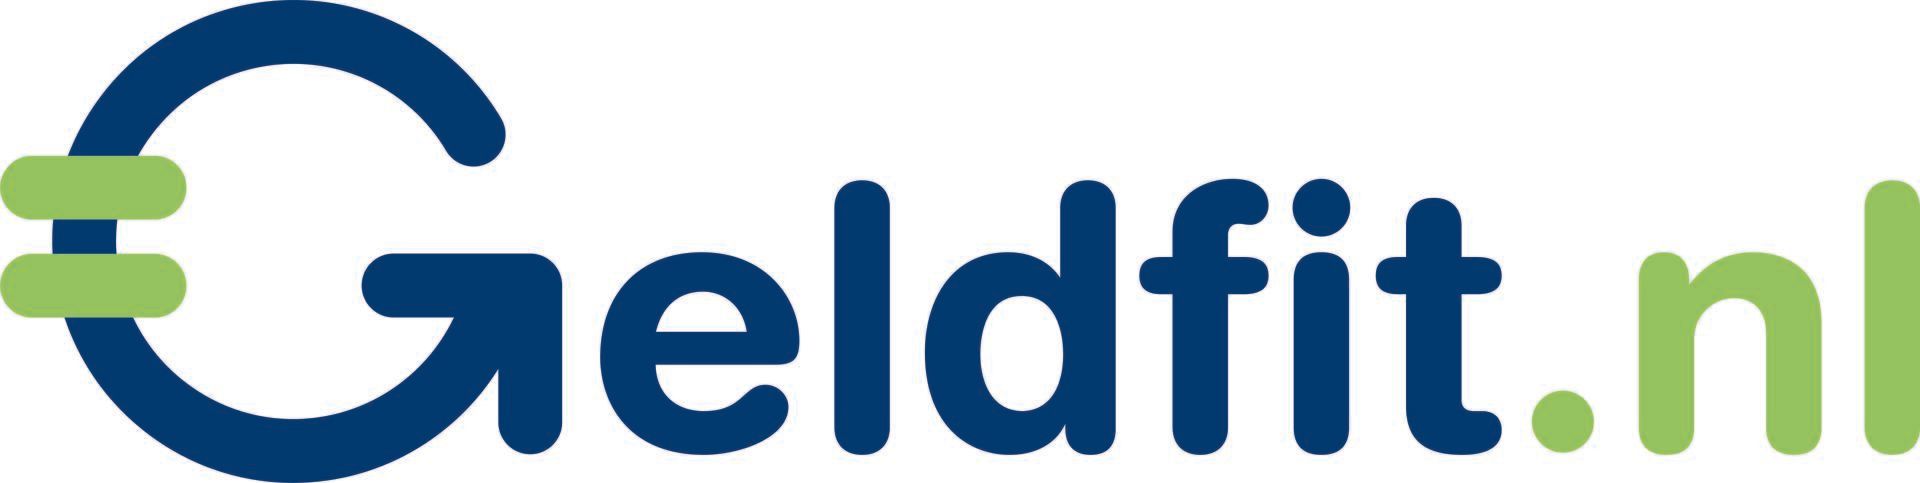 Logo Geldfit